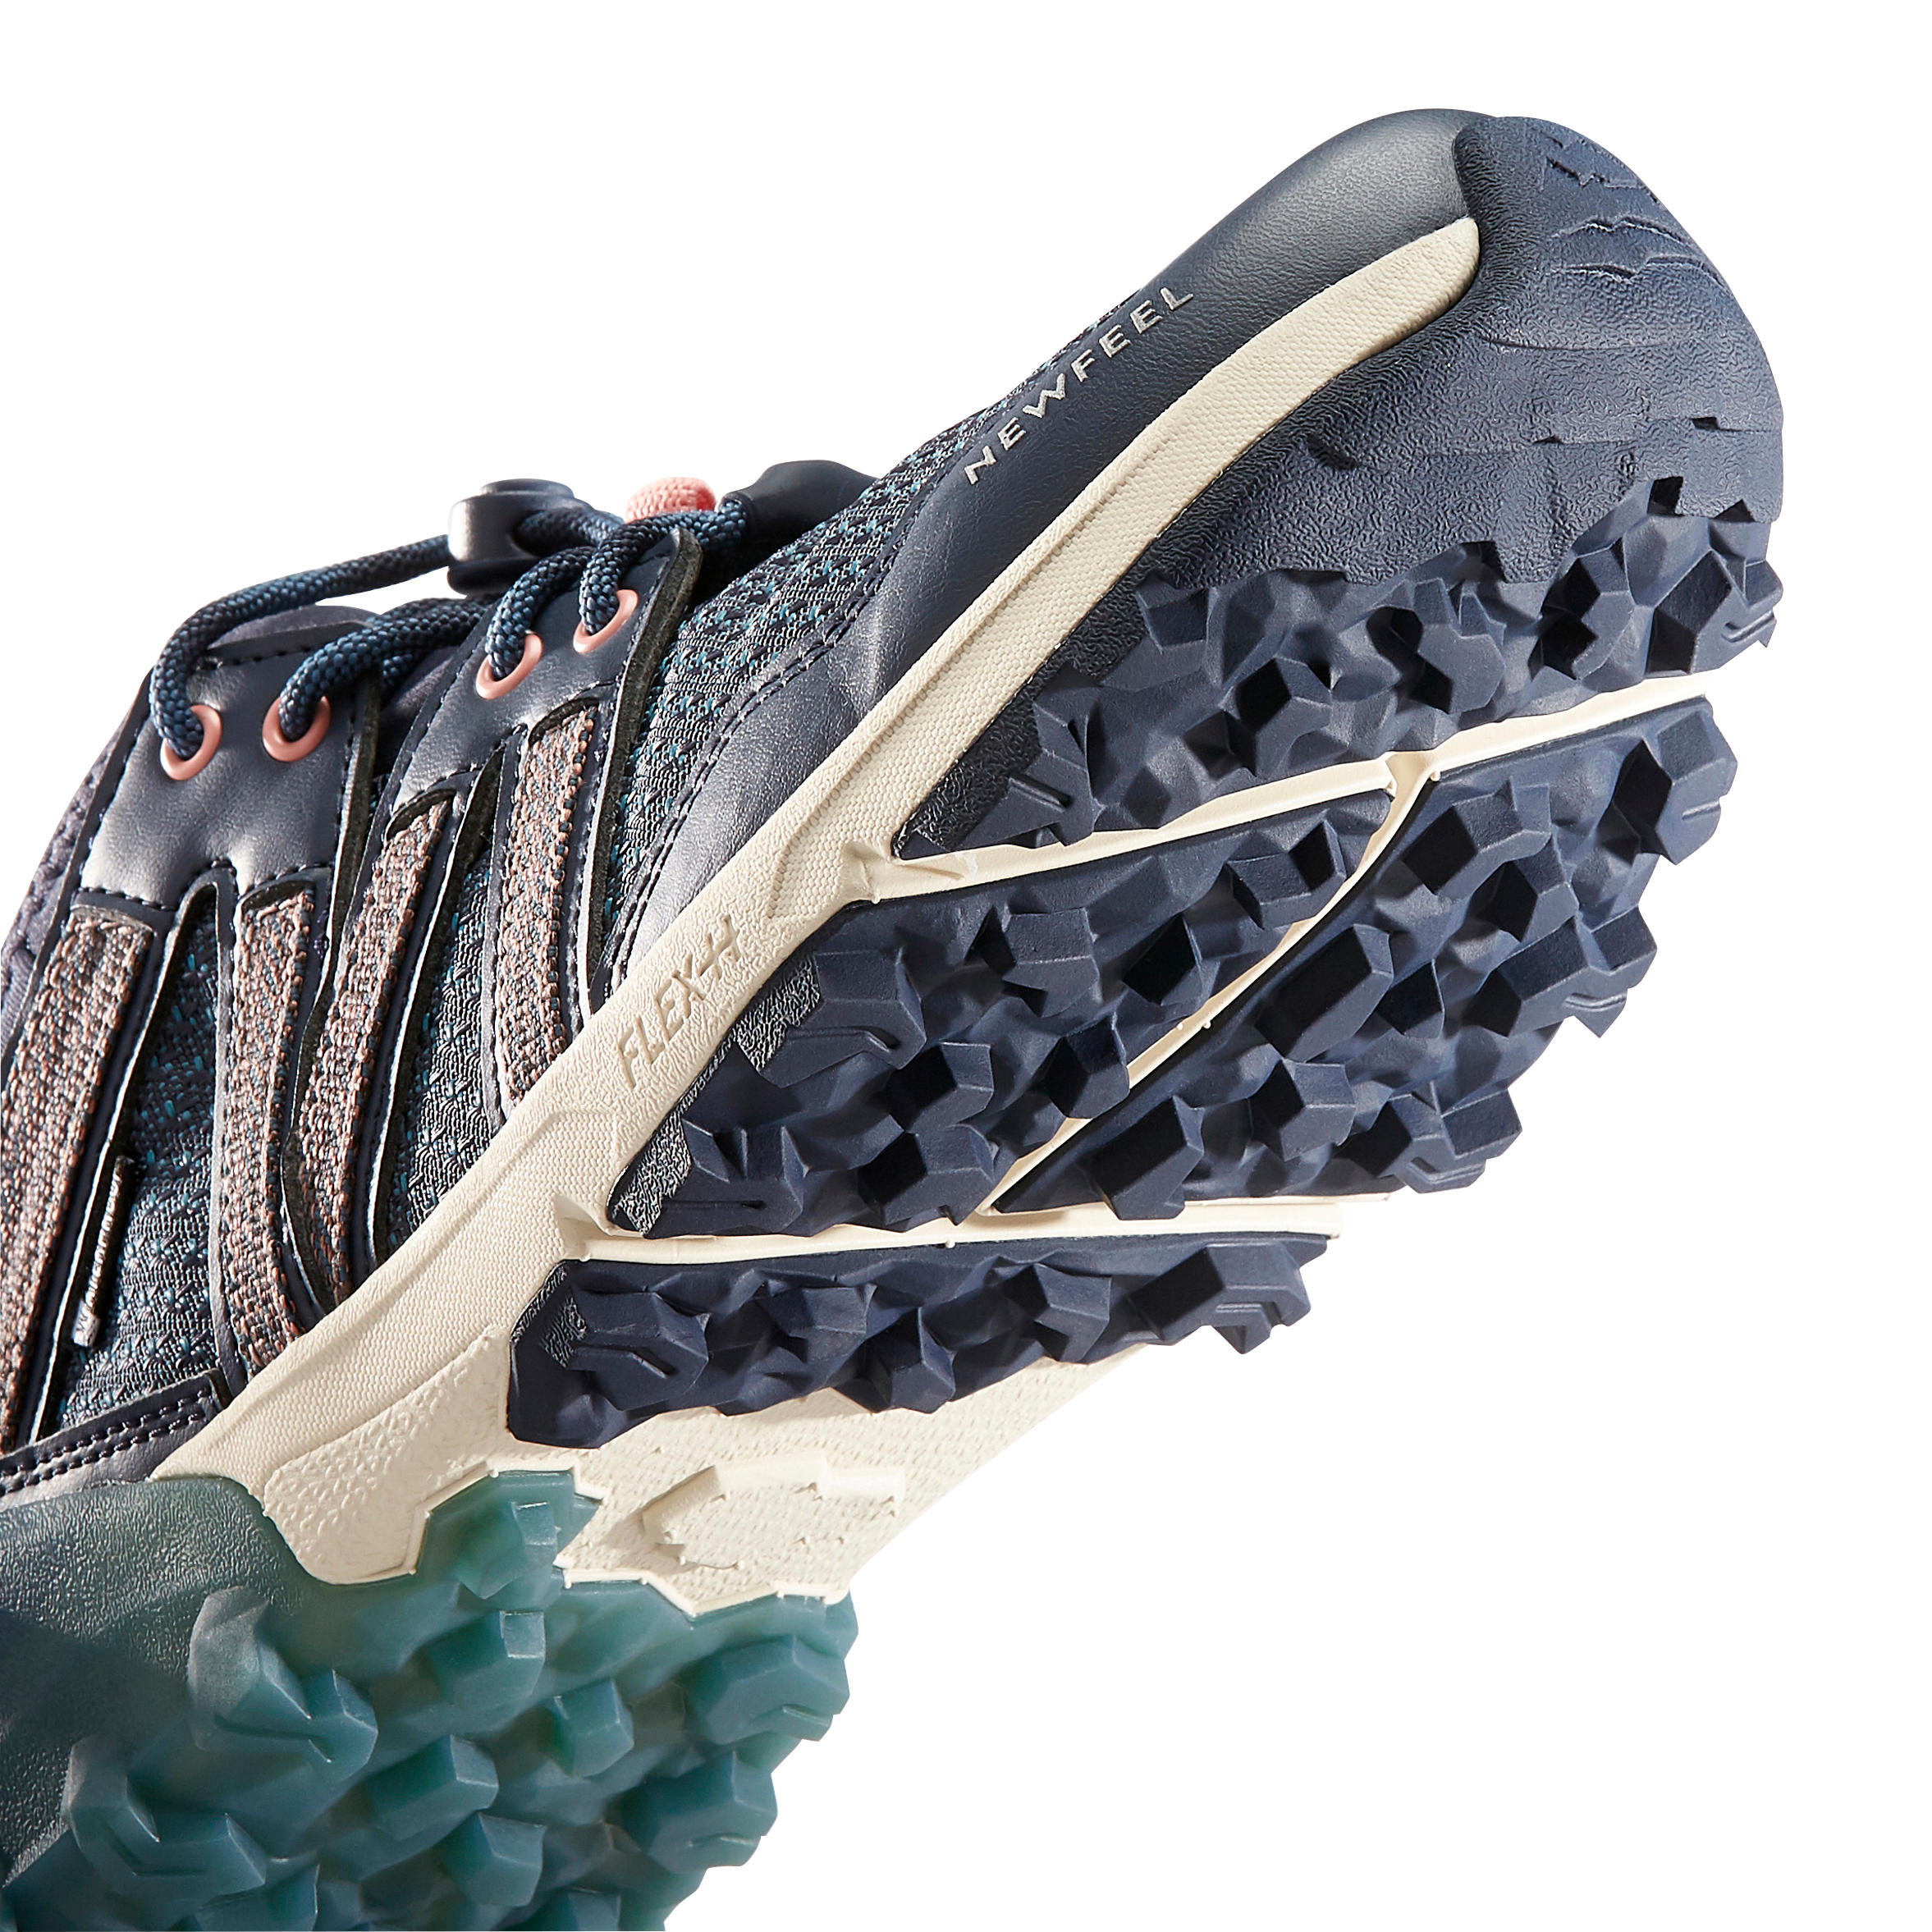 NW 580 Nordic Walking Waterproof Shoes - Blue 11/14